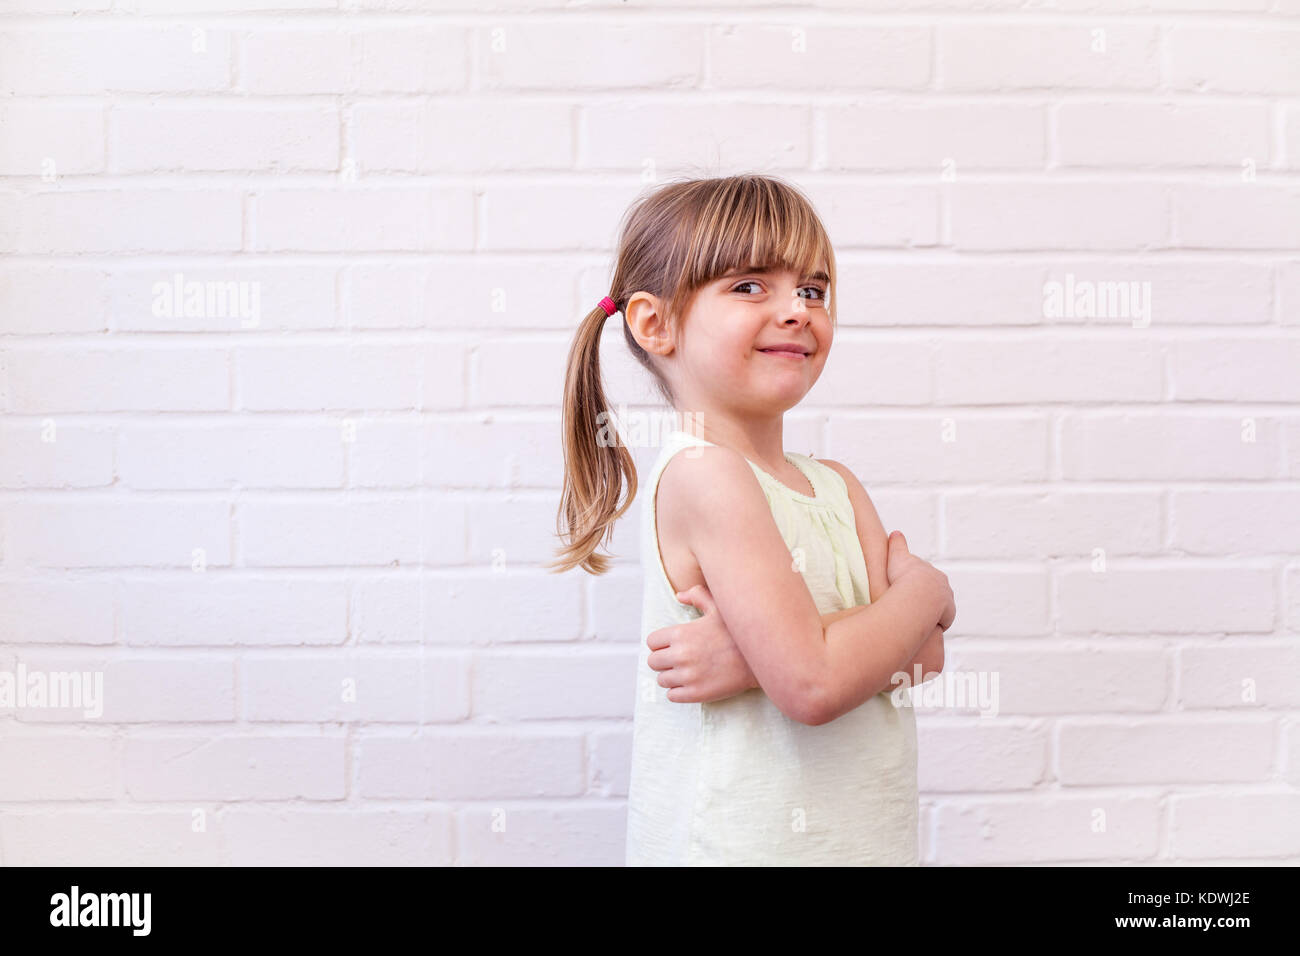 Jolie petite fille blonde profil enfant portrait demi-longueur. Cute kid avec bras croisés contre le mur en brique blanche Banque D'Images